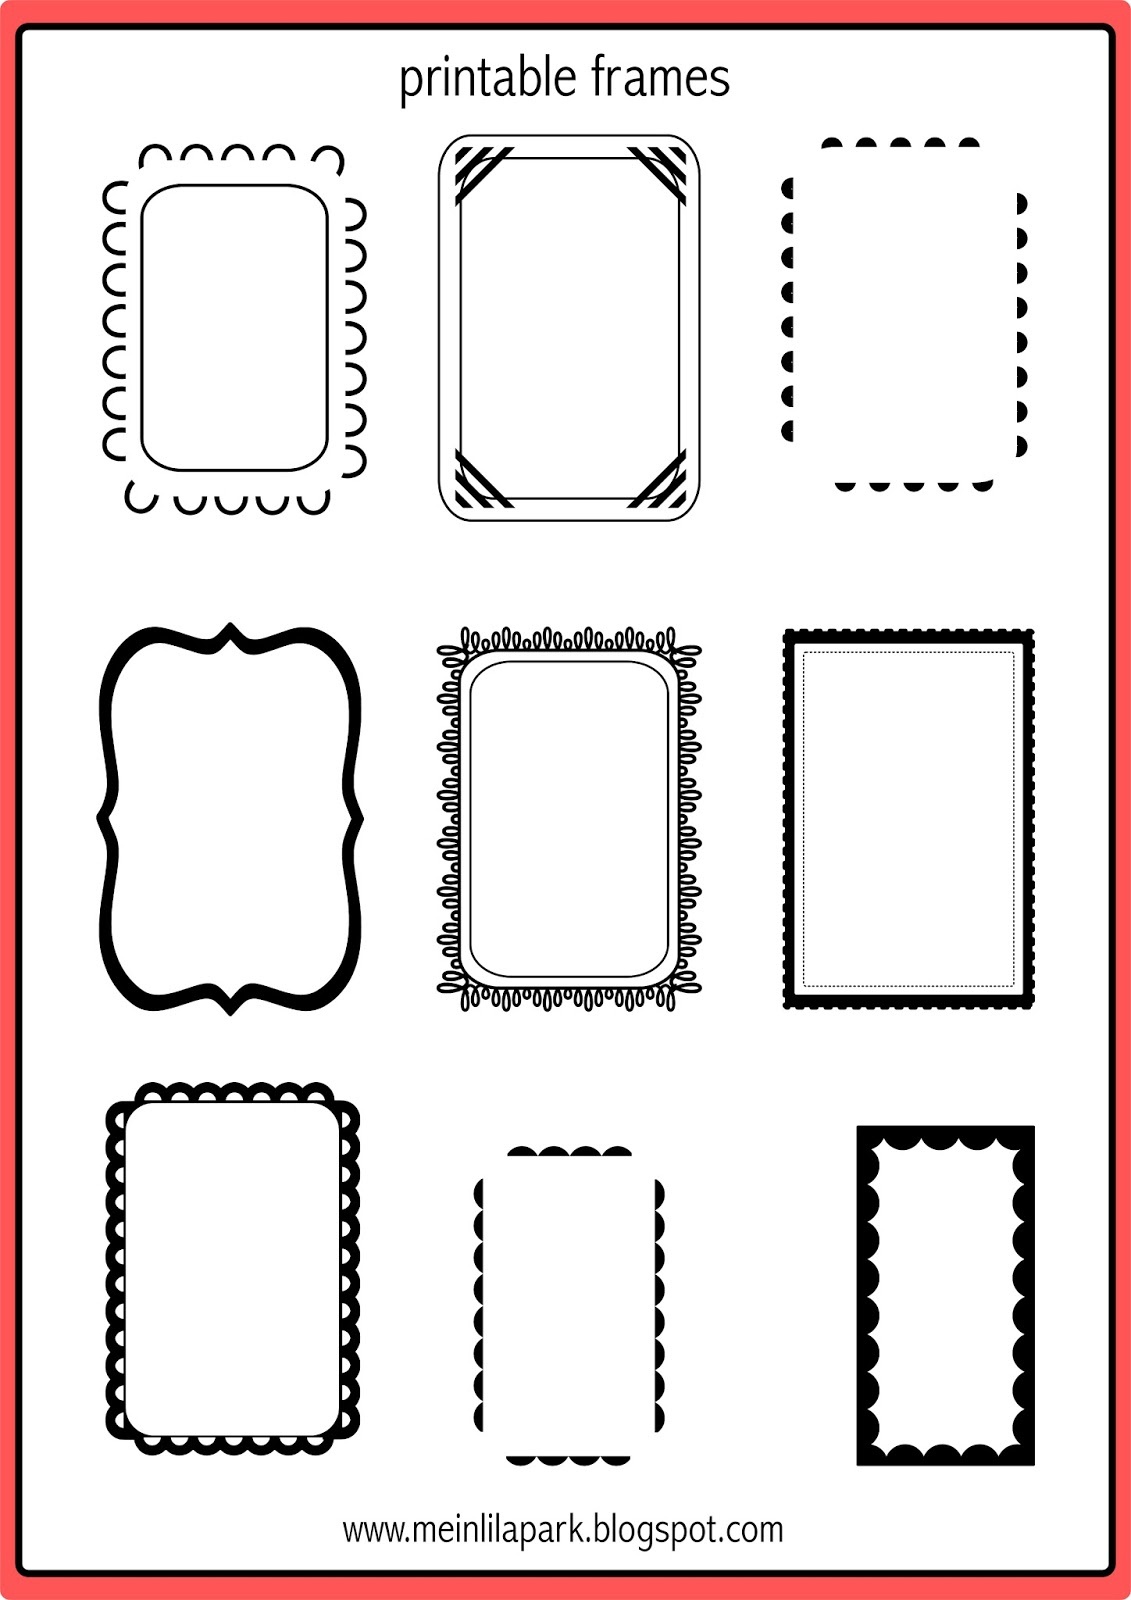 Free Printable Doodle Frames - Bullet Journal Template - Freebie - Free Printable Photo Frames